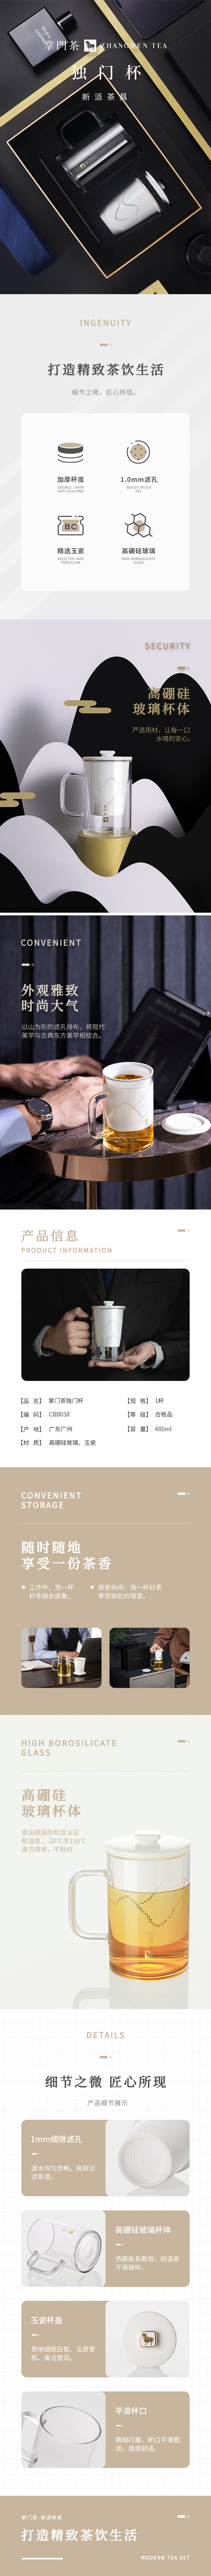 八马茶业子品牌—掌门茶茶杯详情页图0